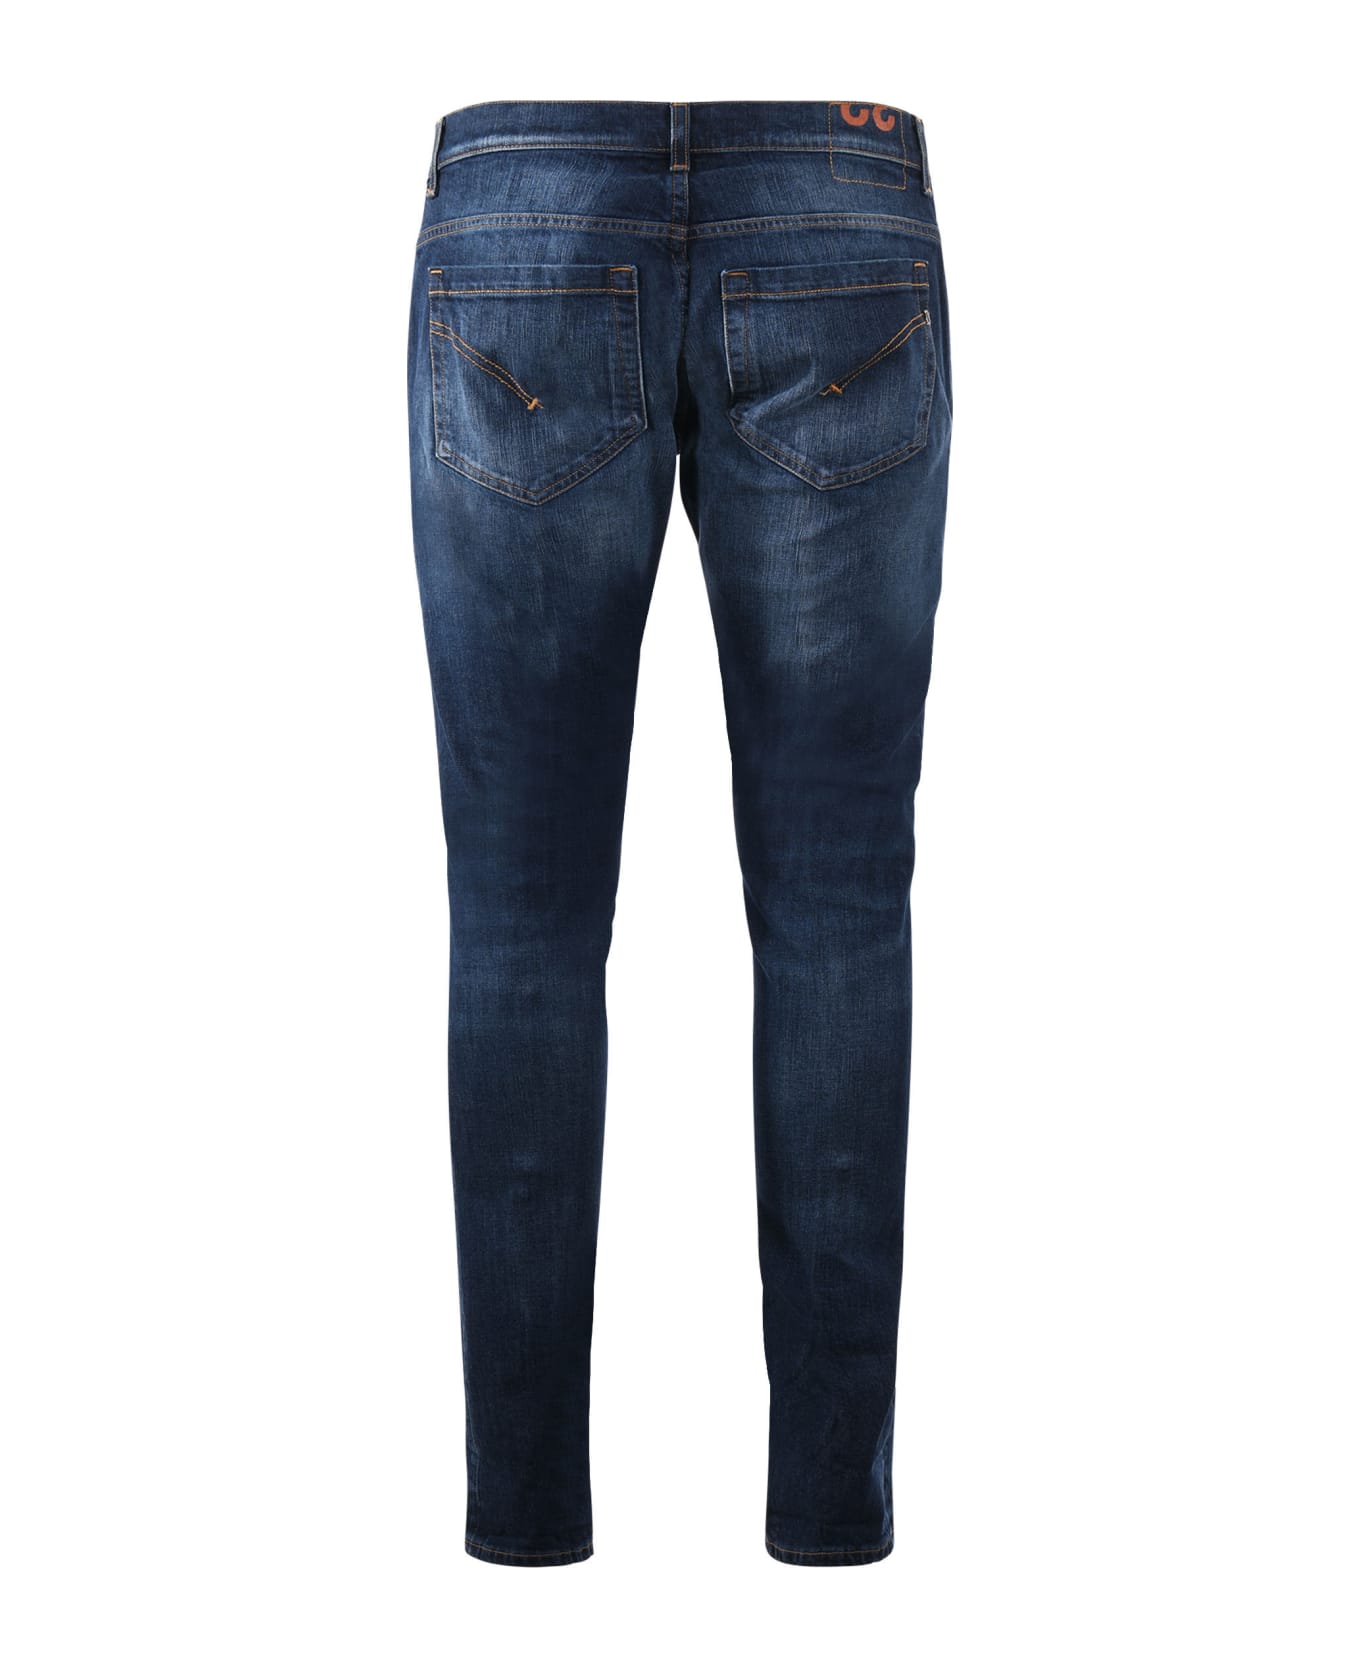 Dondup George Skinny Fit Jeans In Dark Blue Stretch Denim - Blue